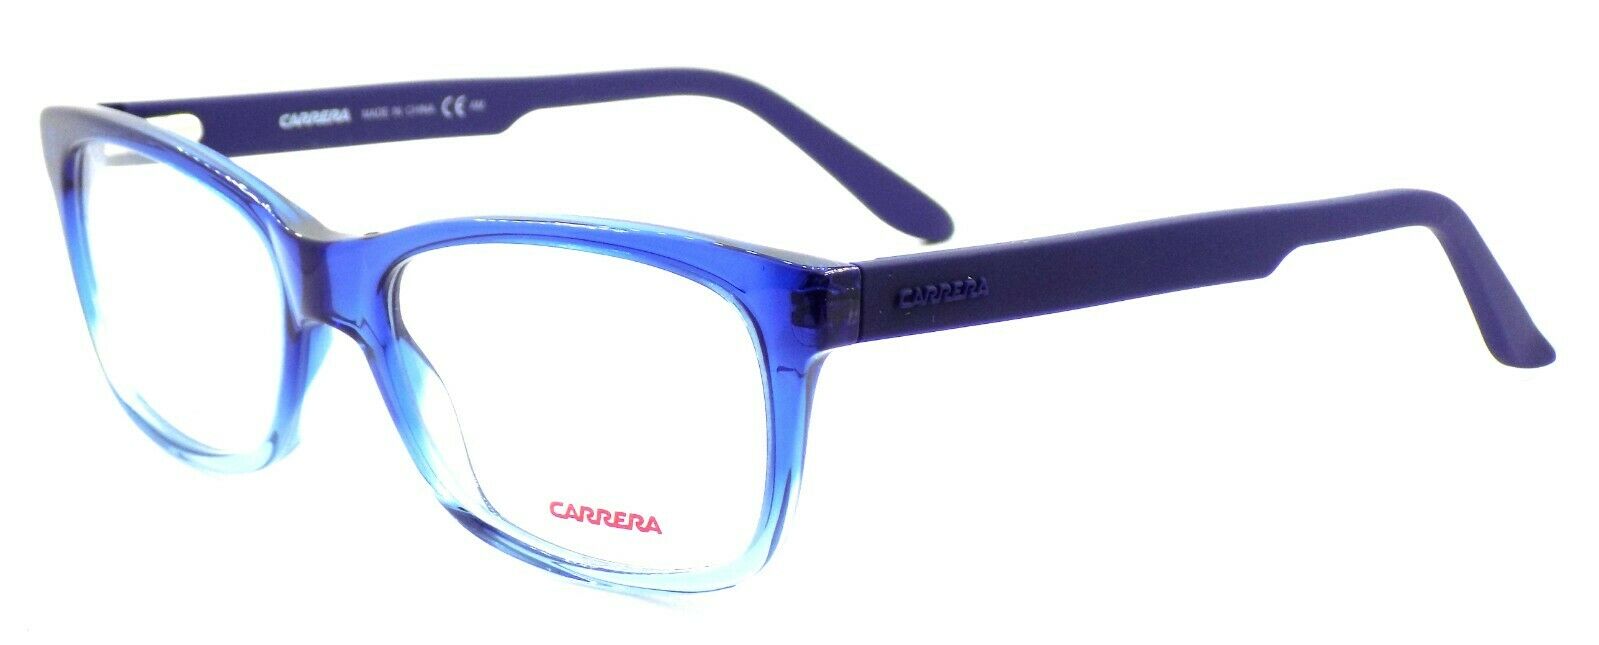 1-Carrera CA6653 TPL Unisex Eyeglasses Frames 52-18-140 Shaded Blue + CASE-827886093717-IKSpecs